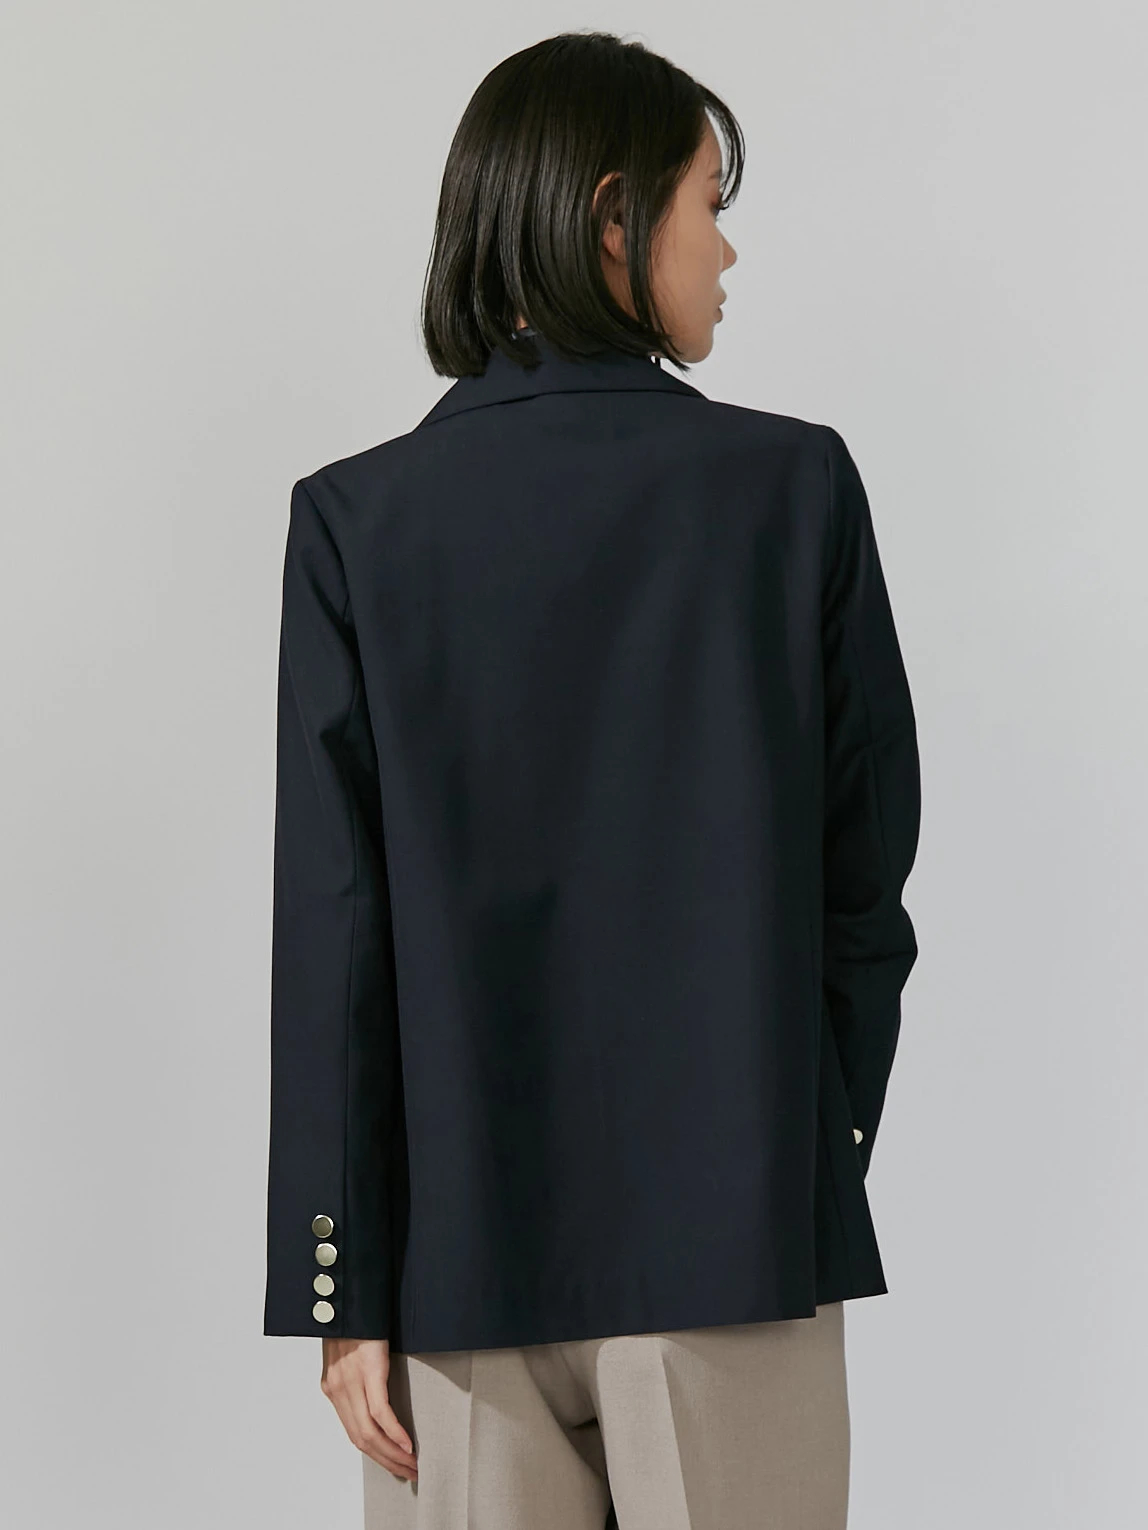 BASIC】テーラードジャケット | レディースファッション通販のTONAL